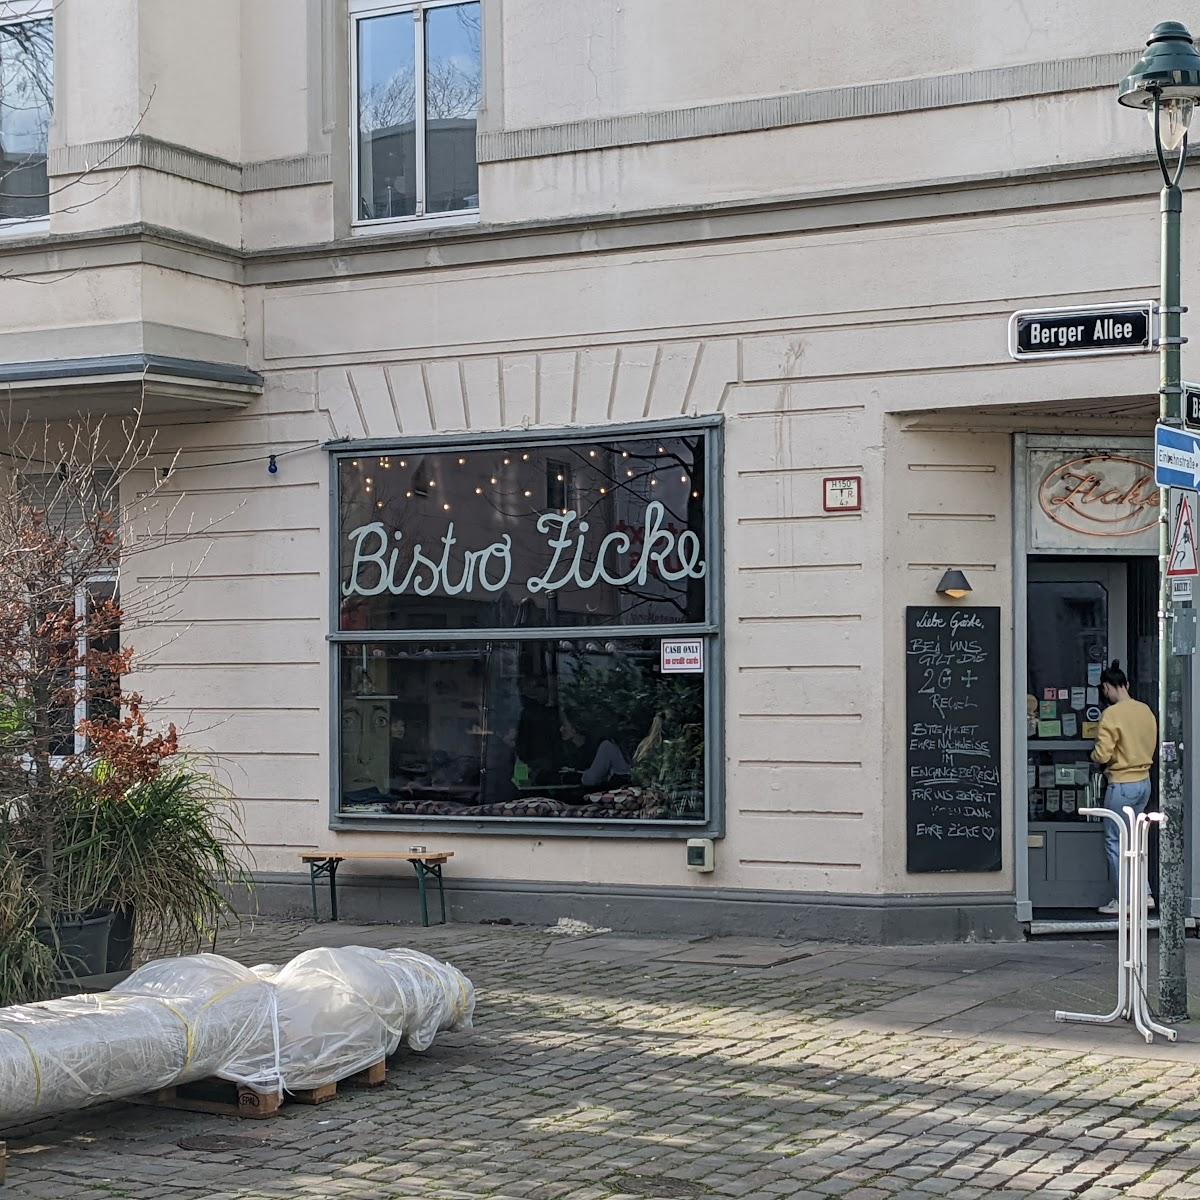 Restaurant "Bistro Zicke" in Düsseldorf